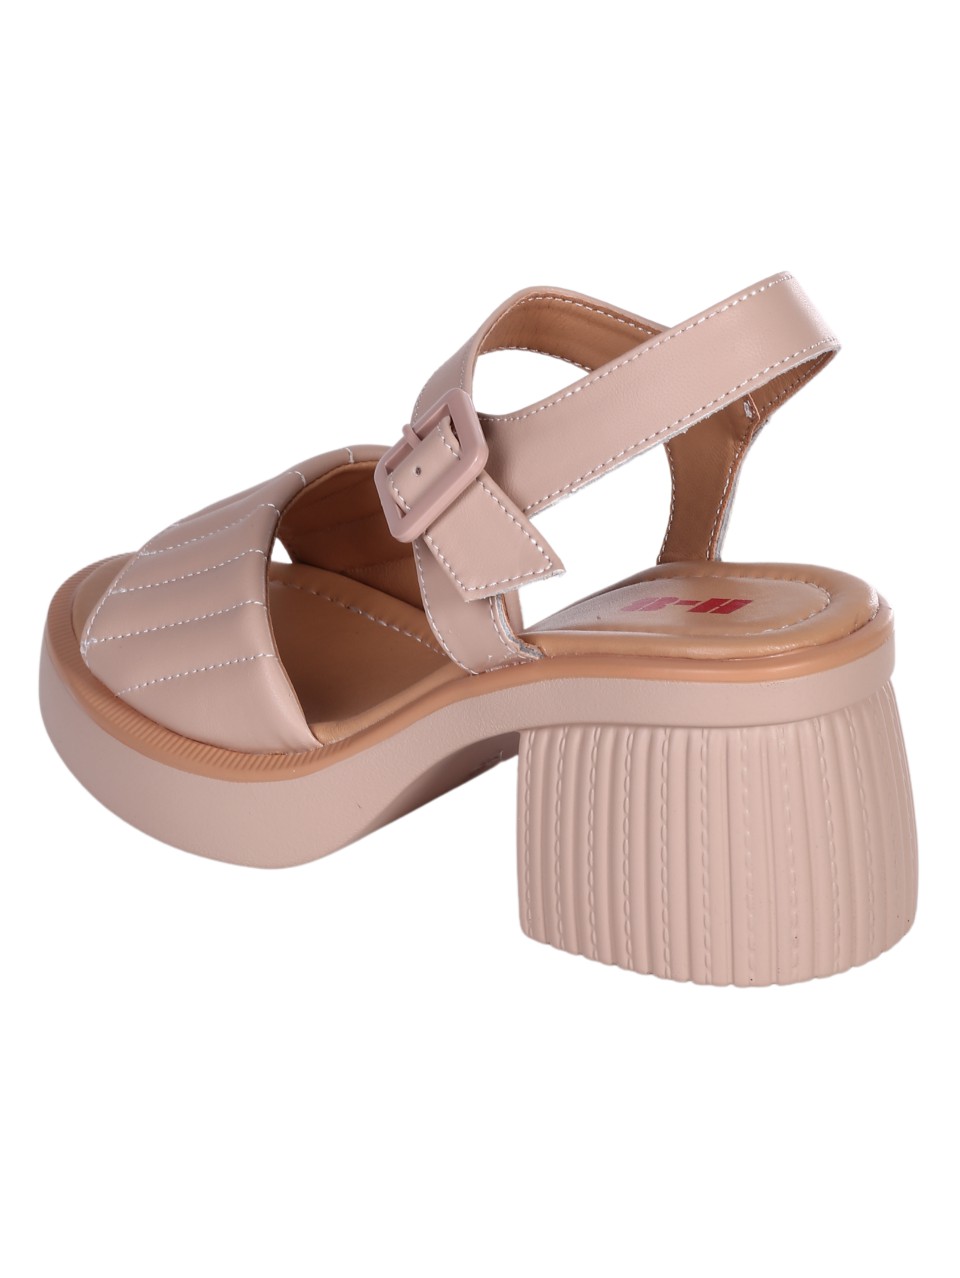 Ежедневни дамски сандали от естествена кожа в бежово 4AF-24060 beige